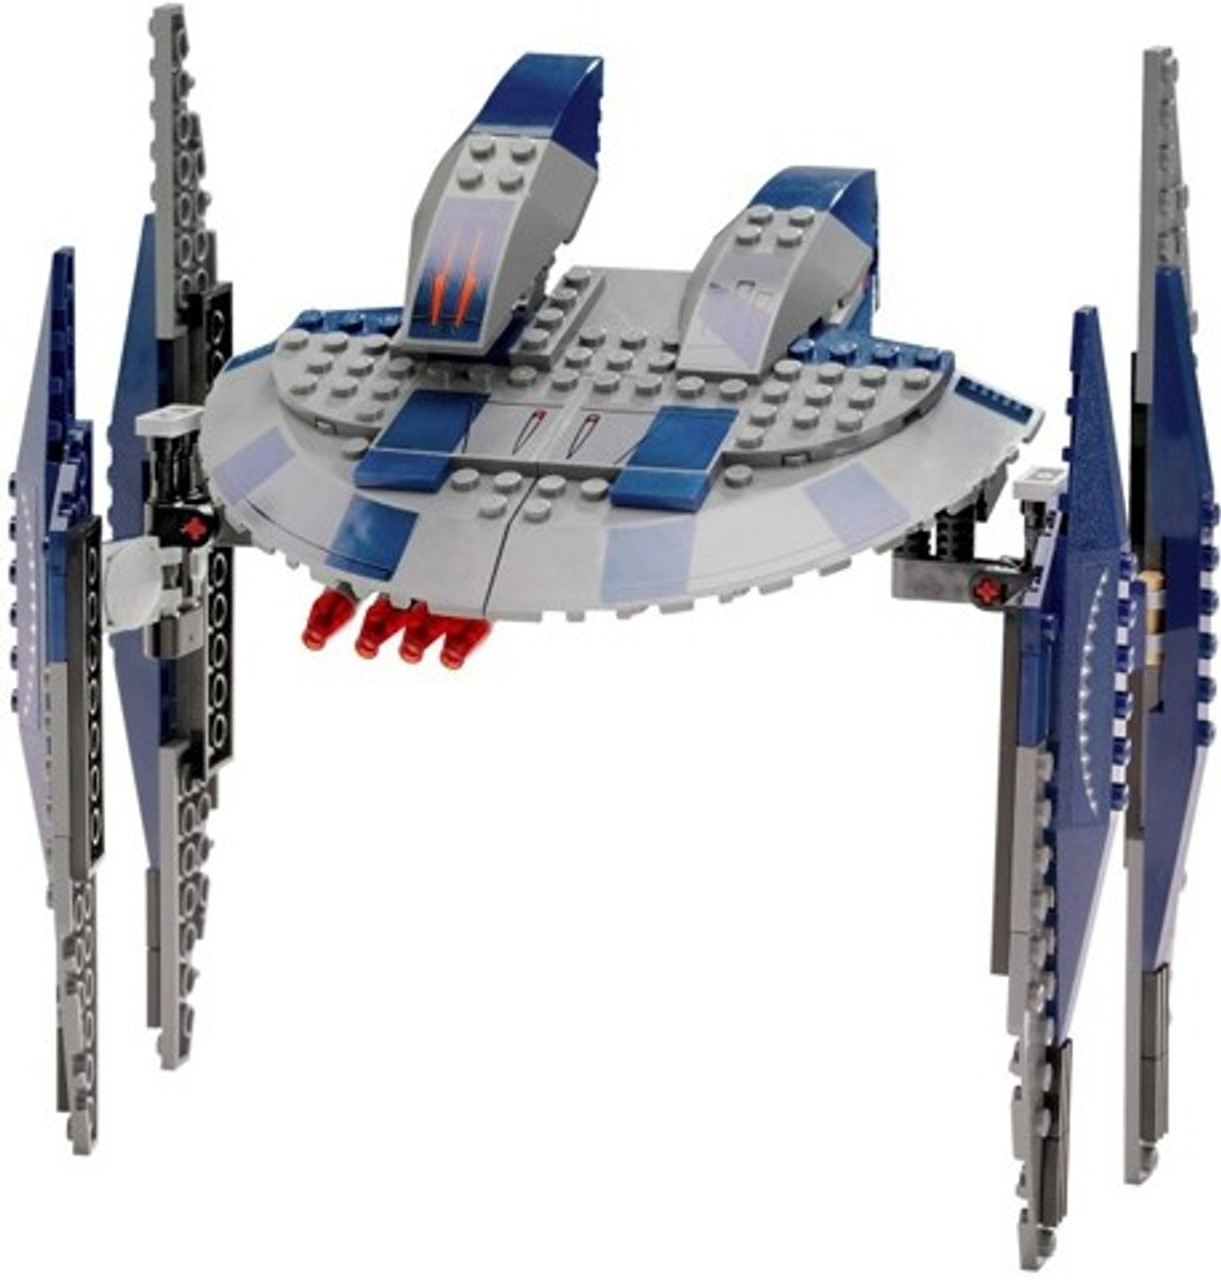 lego star wars droid ship